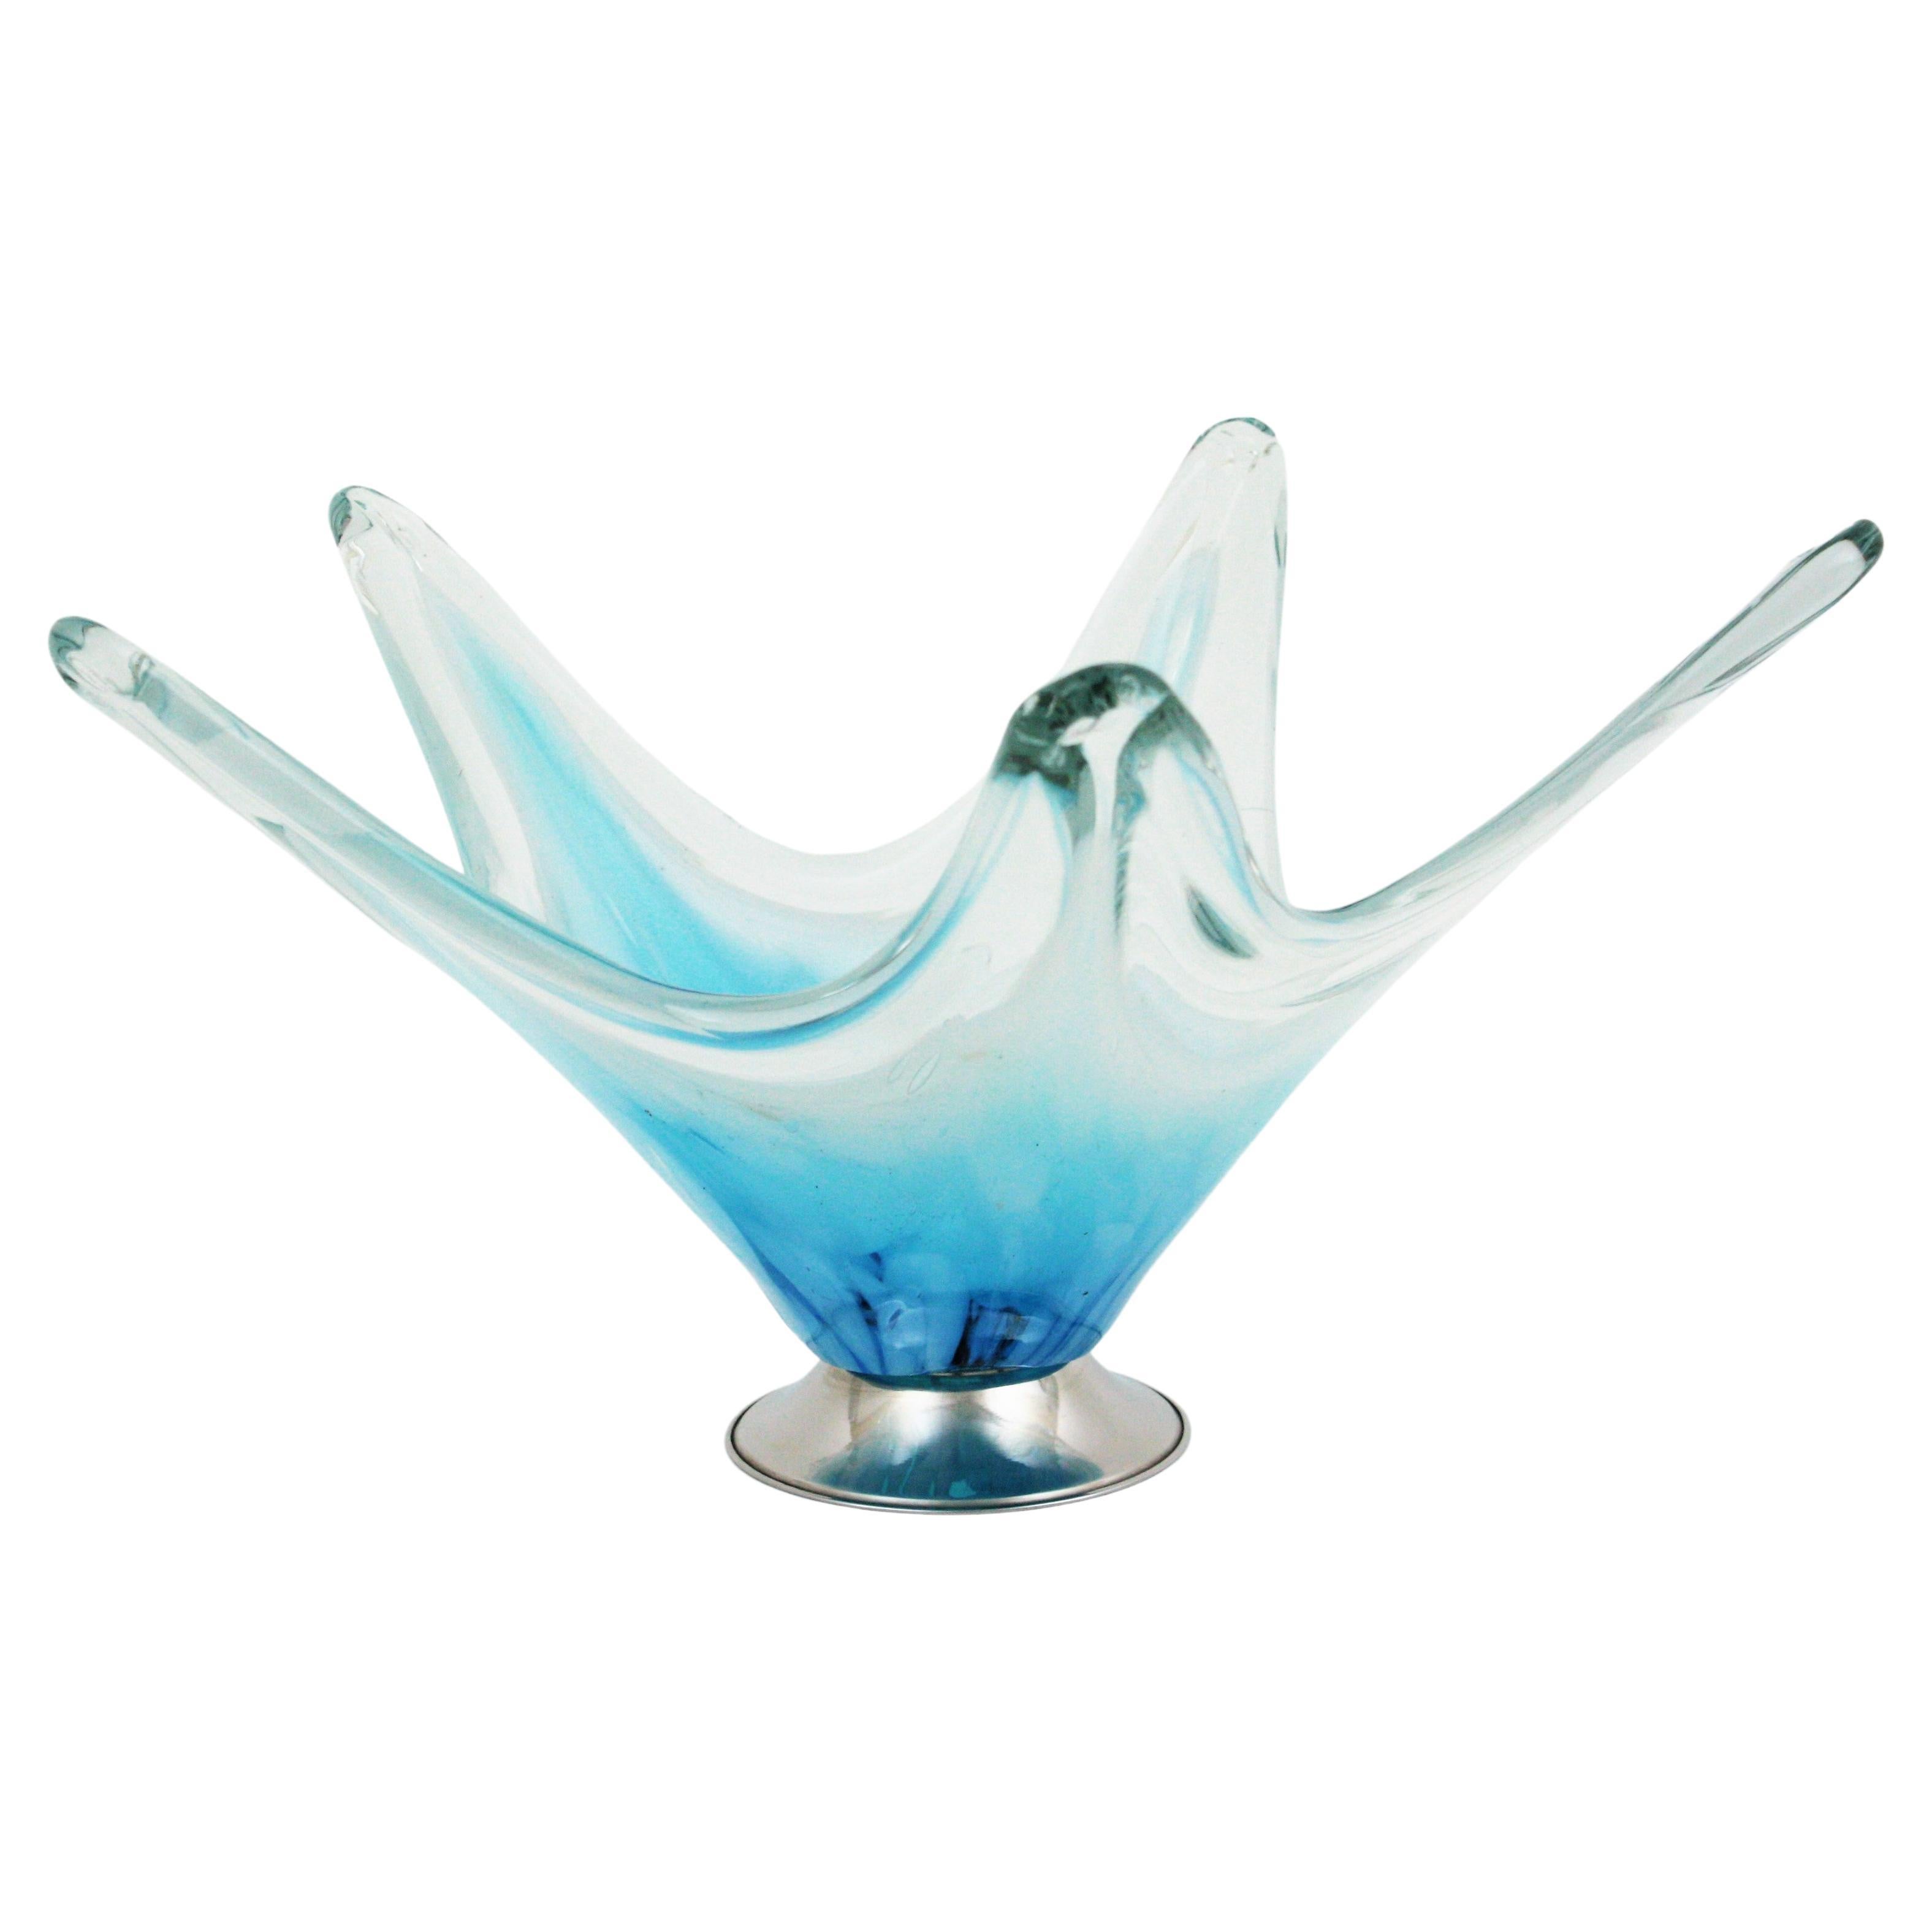 Italian Modernist Murano Blue White Art Glass Centerpiece Vase